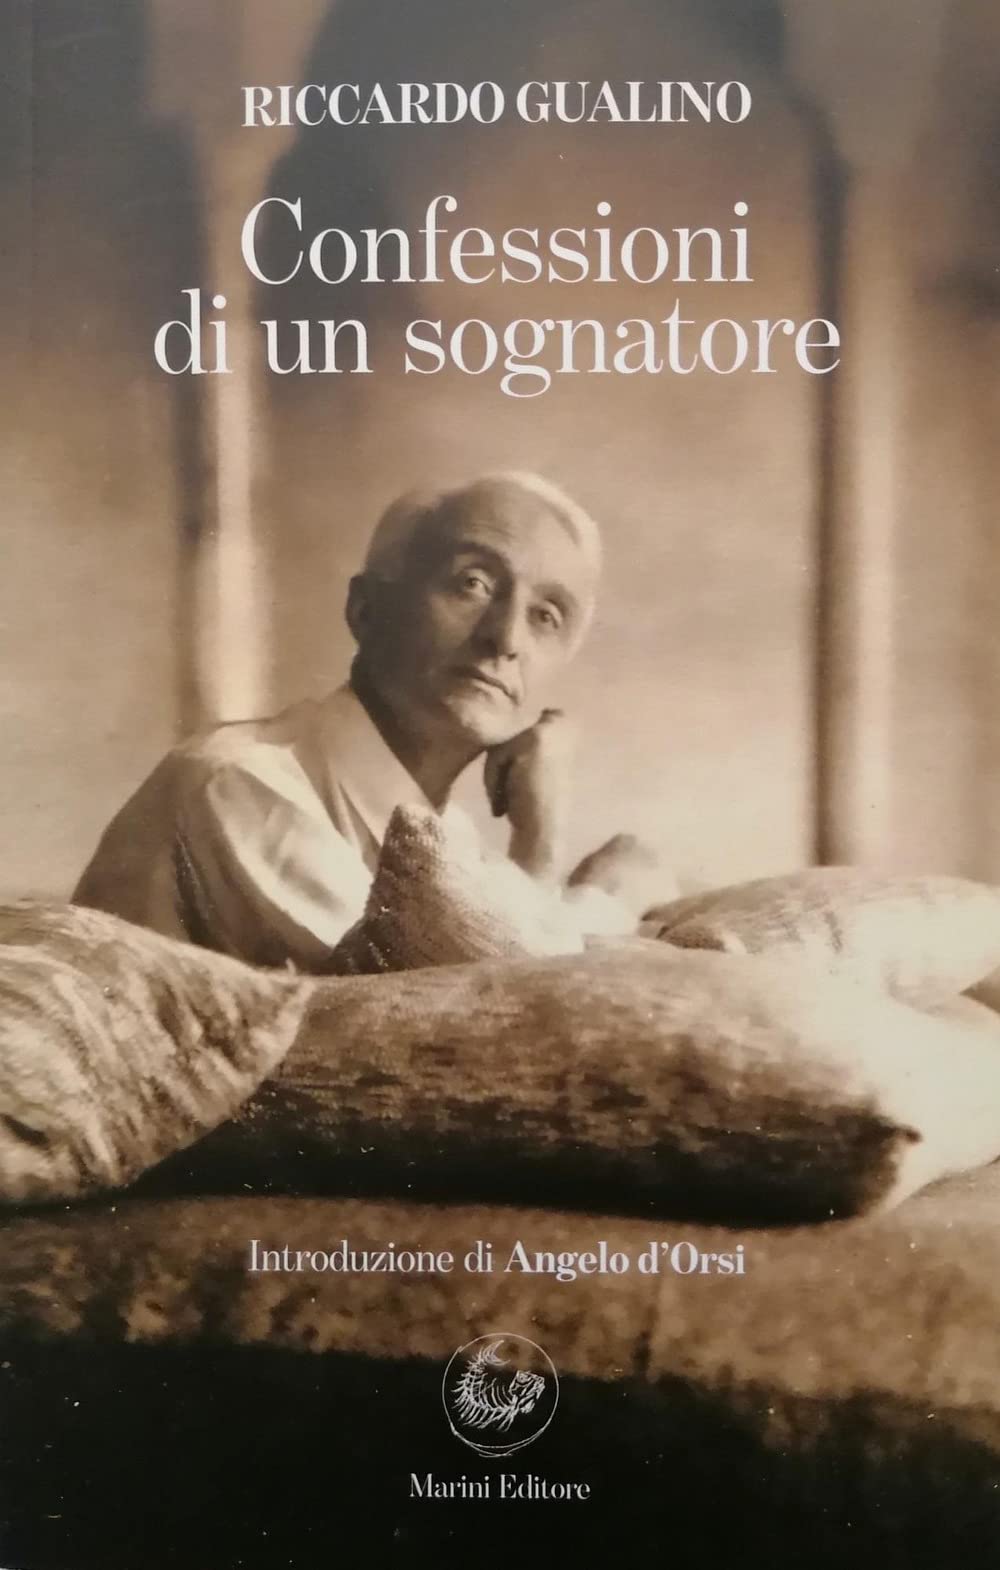 Riccardo Gualino – Confessioni di un sognatore (Marini, Roma 2021)